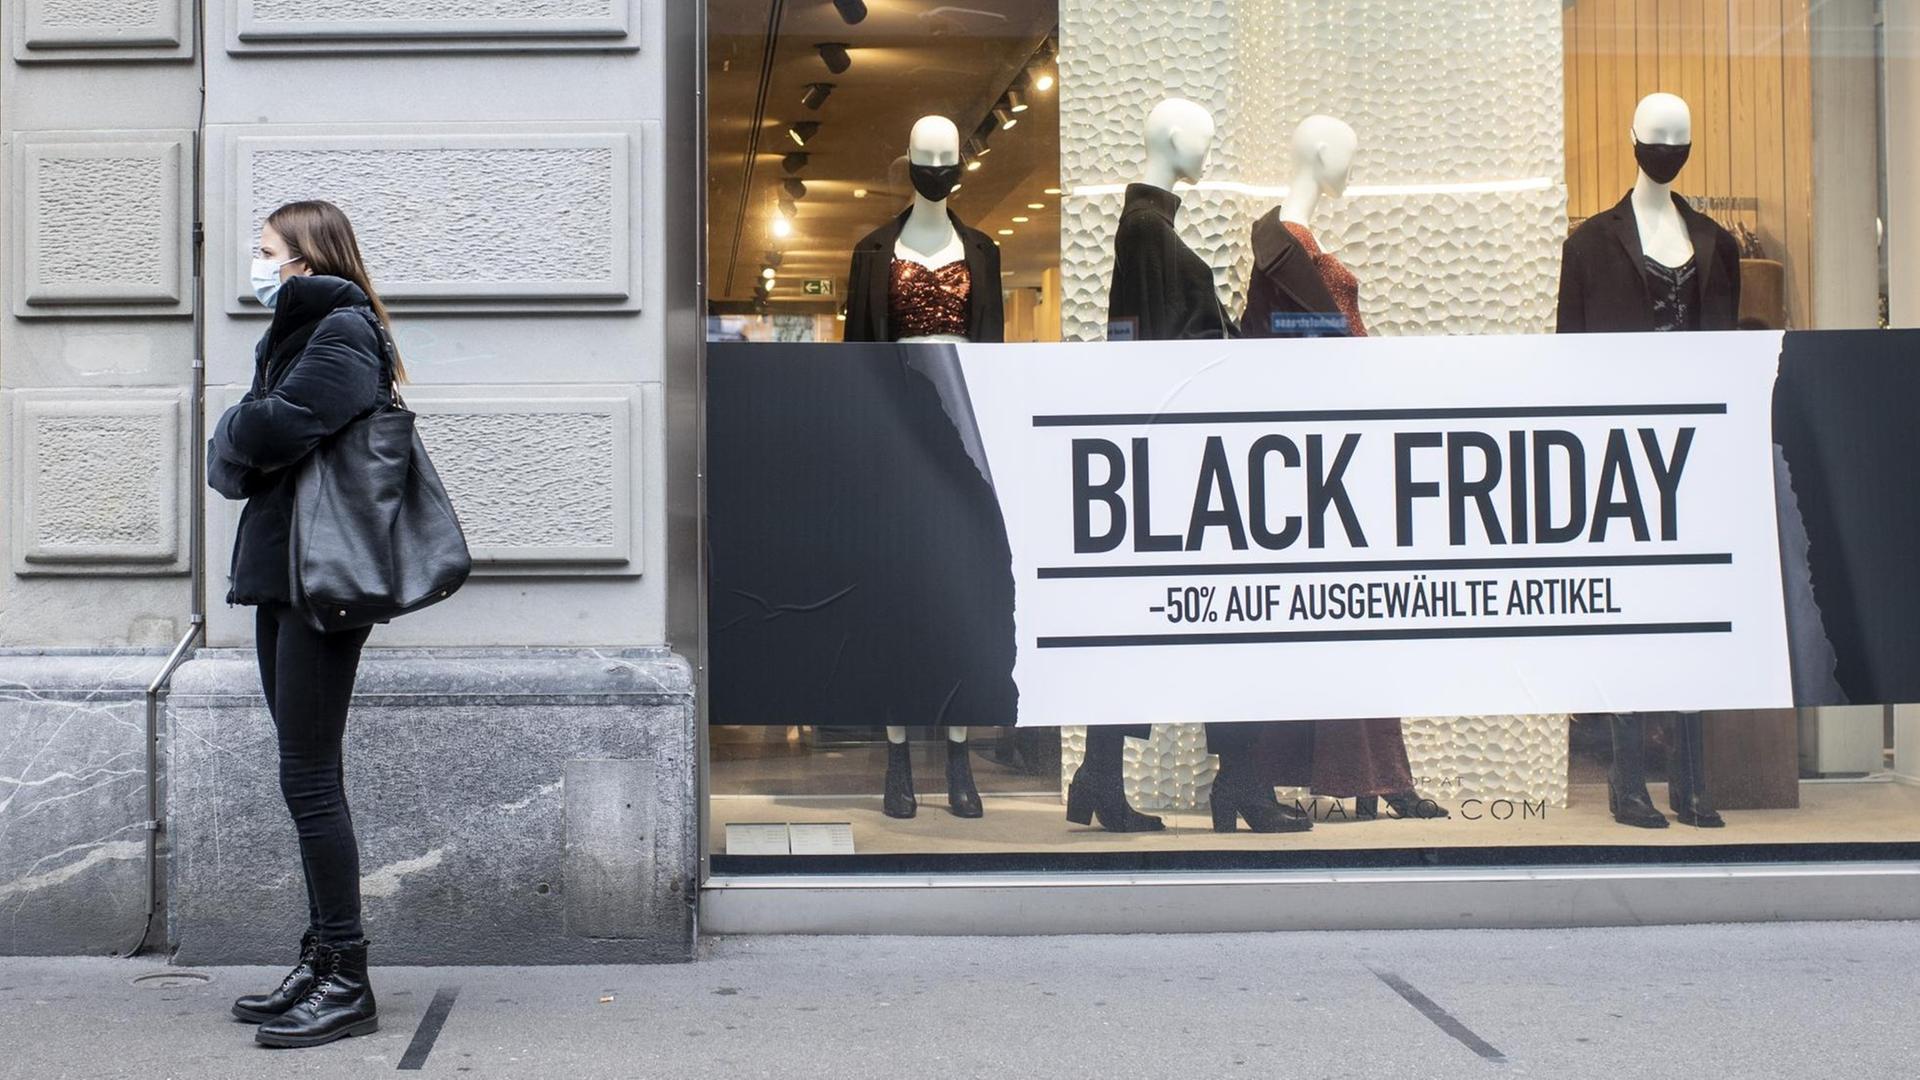 Eine Frau steht mit Maske vor einem Schaufenster, das für den "Black Friday" geschmückt ist.